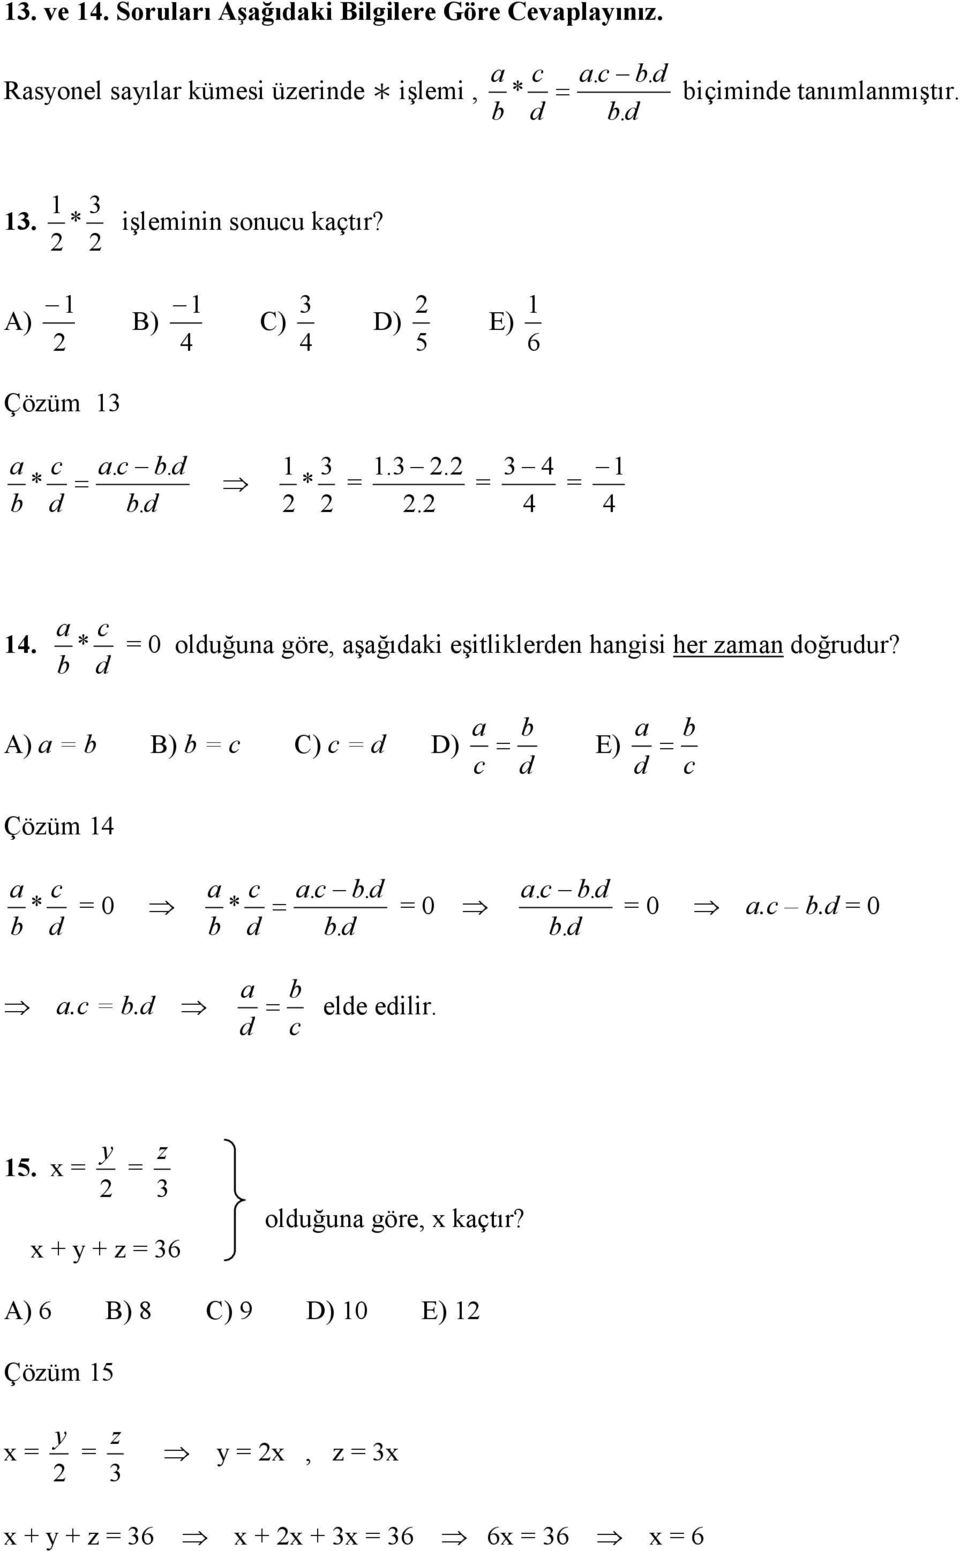 a c * = 0 olduğuna göre, aşağıdaki eşitliklerden hangisi her zaman doğrudur? b d A) a = b B) b = c C) c = d D) a b a b = E) = c d d c Çözüm 4 a c a c a. c b.